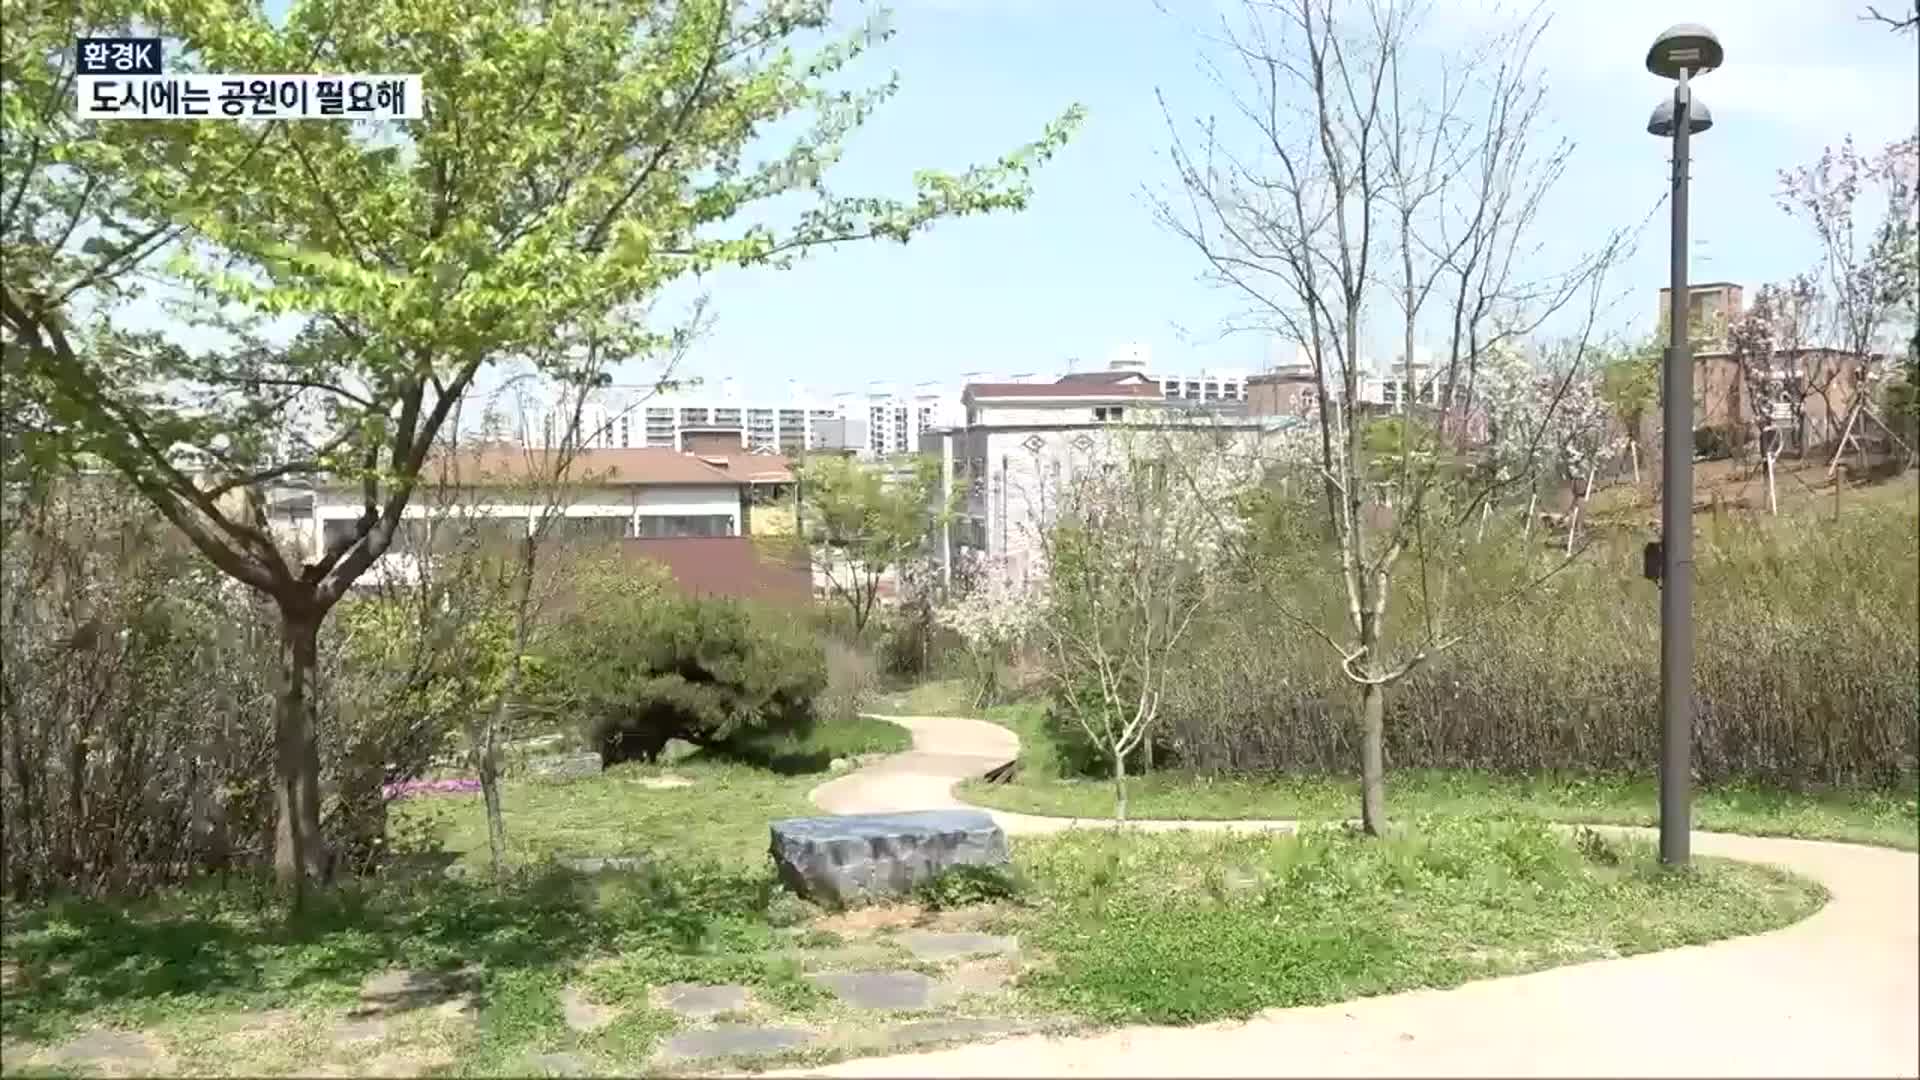 [환경K] 도시에는 공원이 필요해